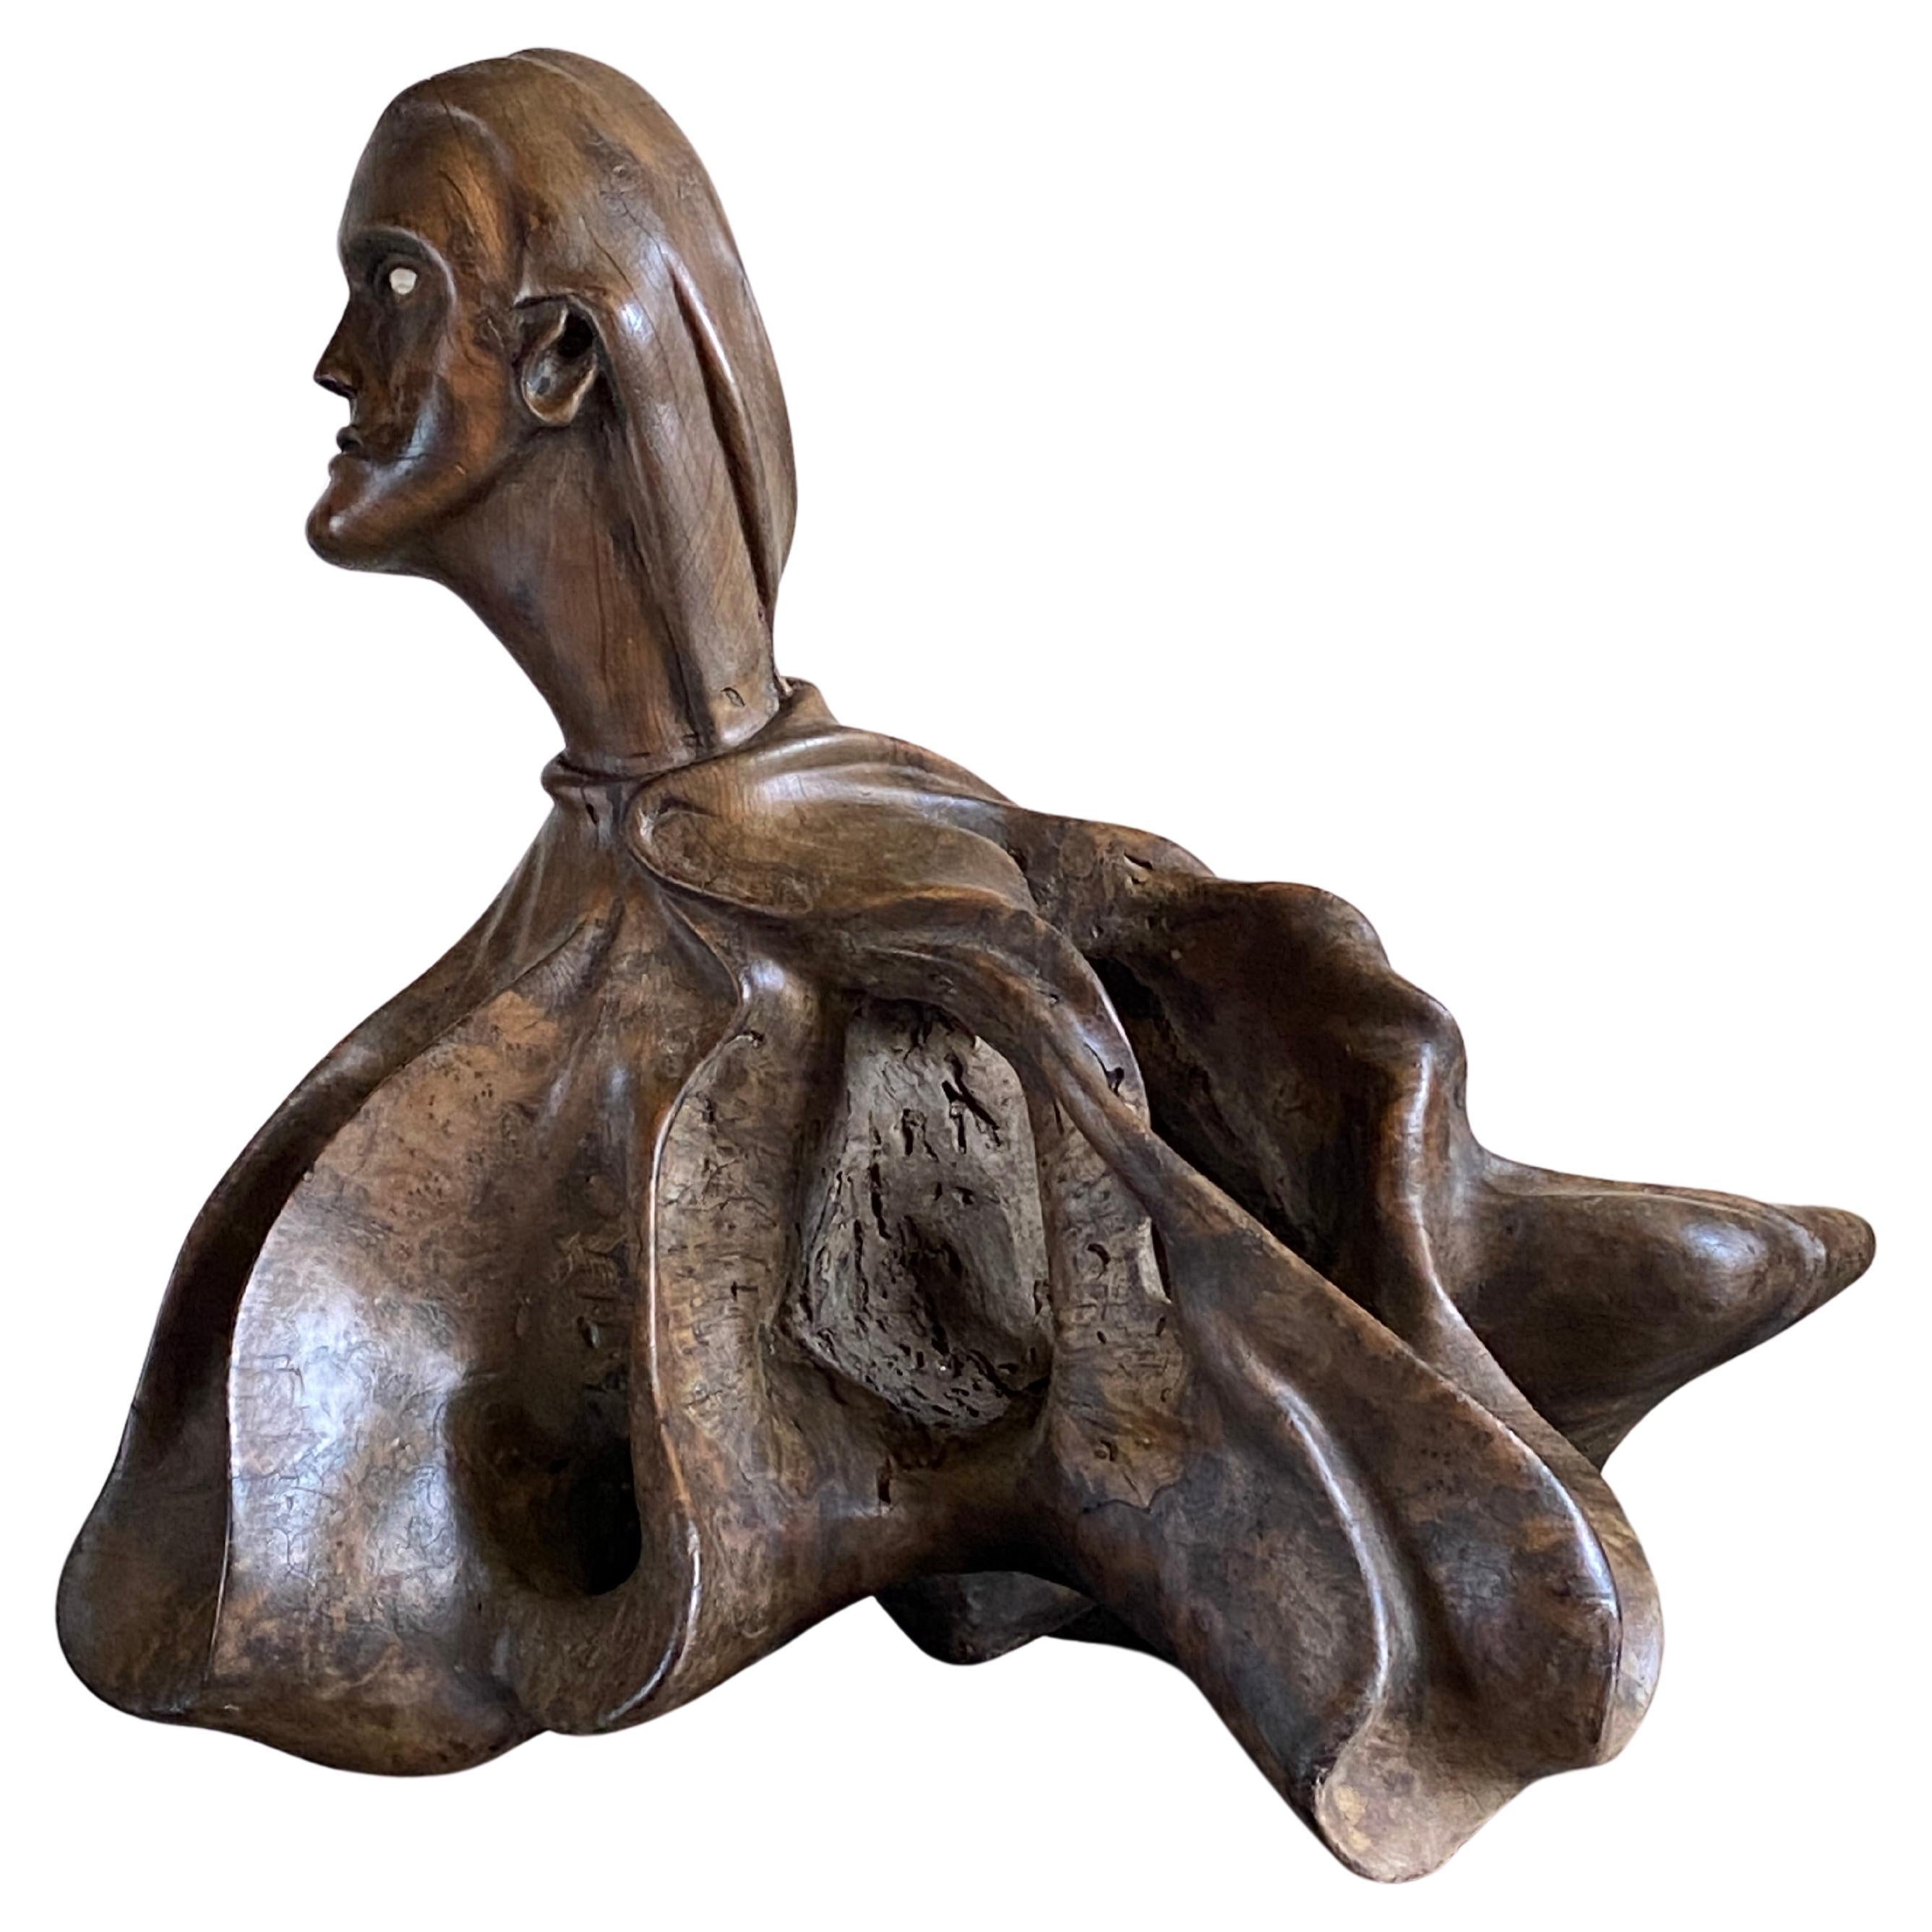 Exceptionnelle sculpture d'art populaire représentant une tête et un corps humains vêtus d'une cape ondulante de forme organique avec un oculaire en os.

Patine exceptionnelle avec des lignes sculptées et fluides qui en font une pièce unique. 


